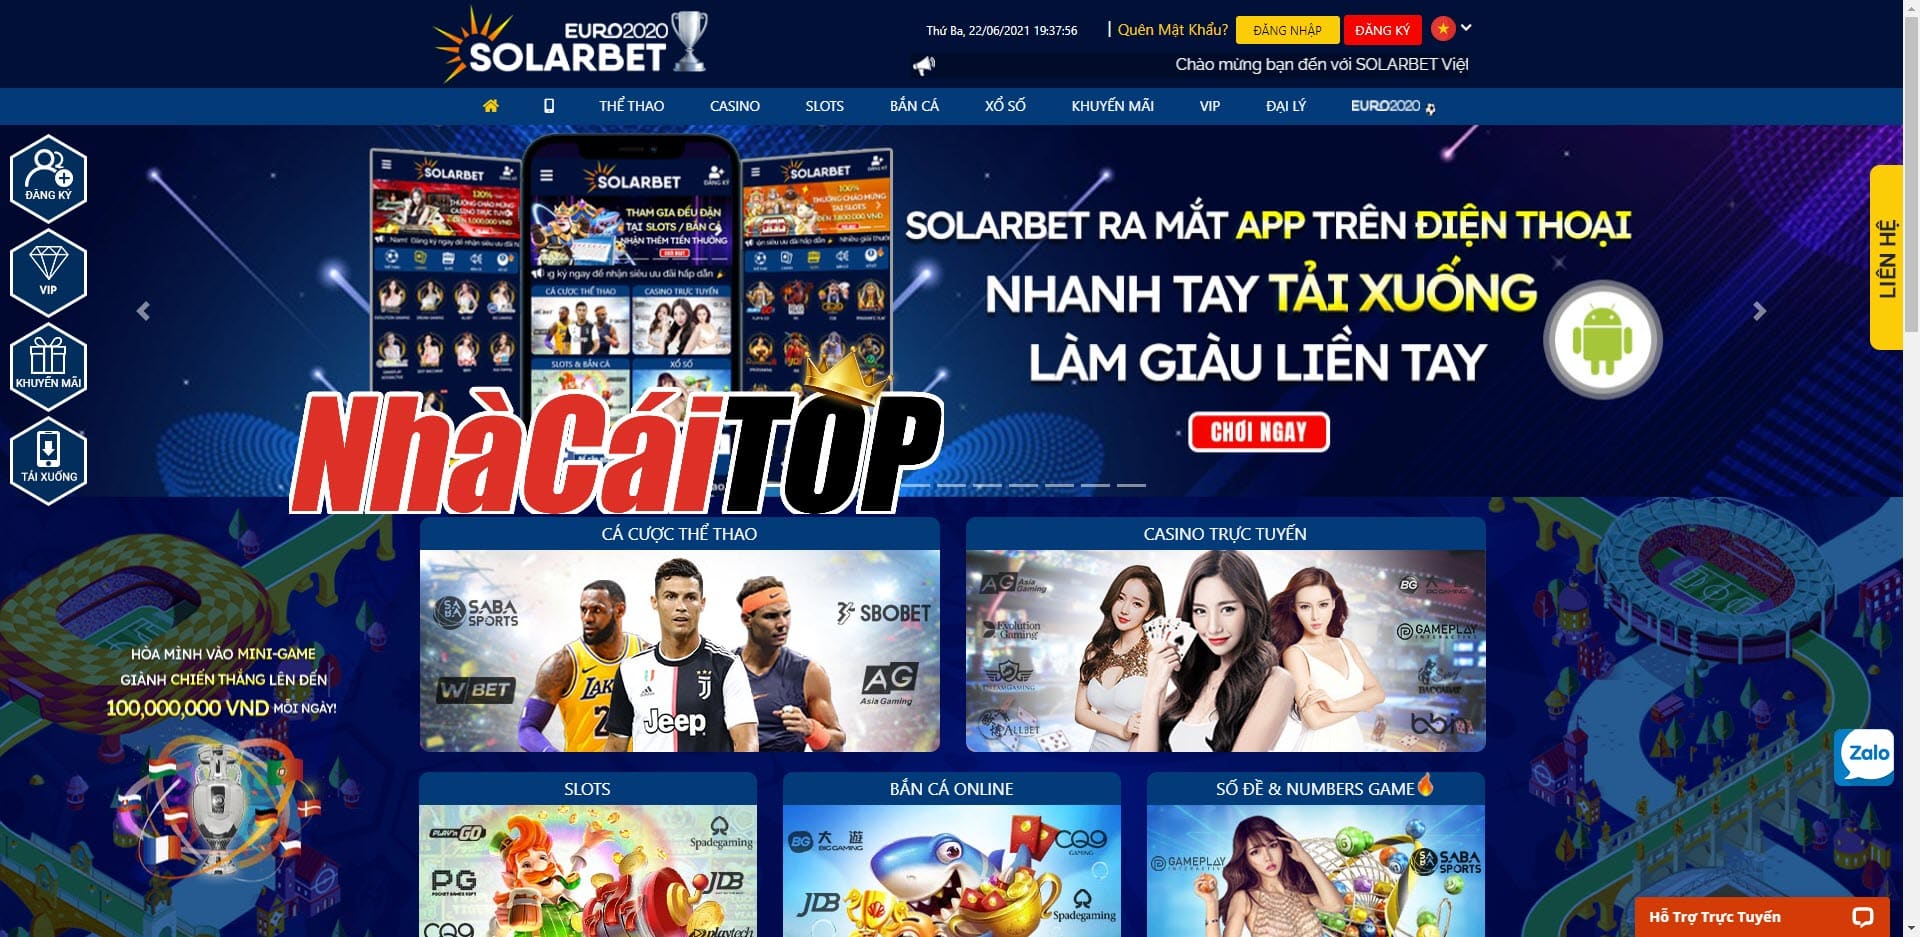 Solarbet - Nhà cái casino trực tuyến Việt Nam mới nổi 2021